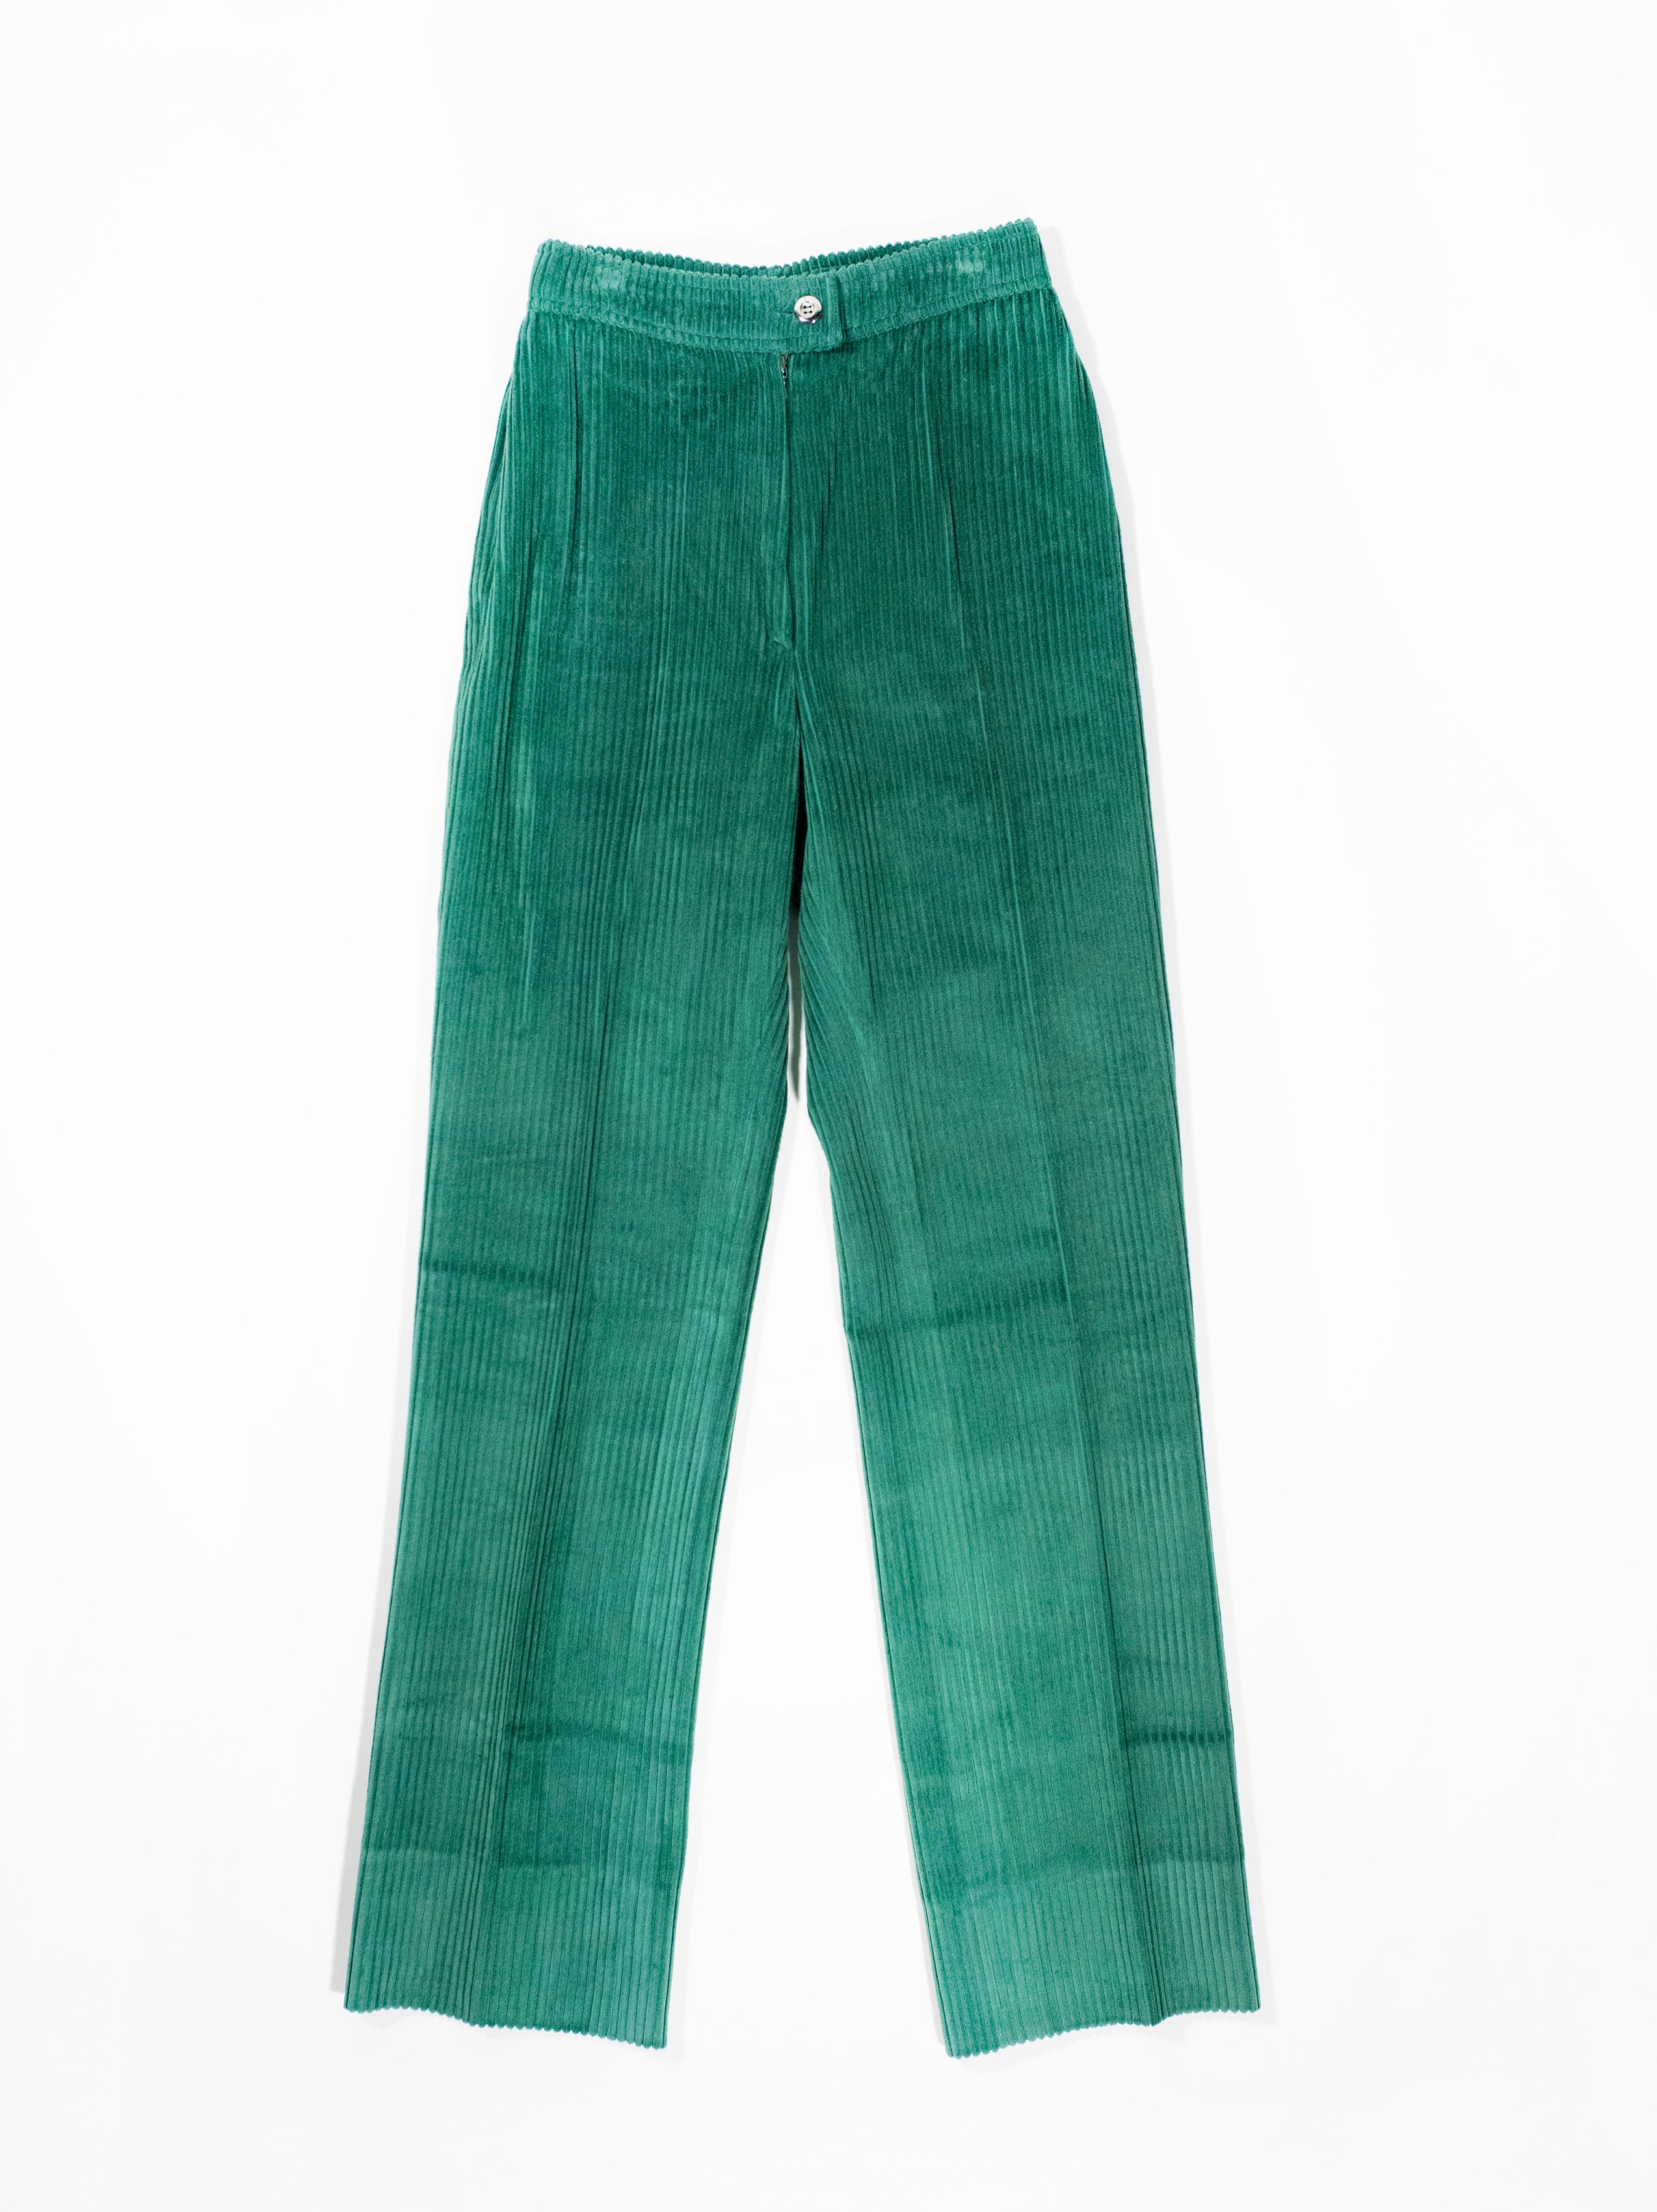 Vintage Courrèges Corduroy Pants